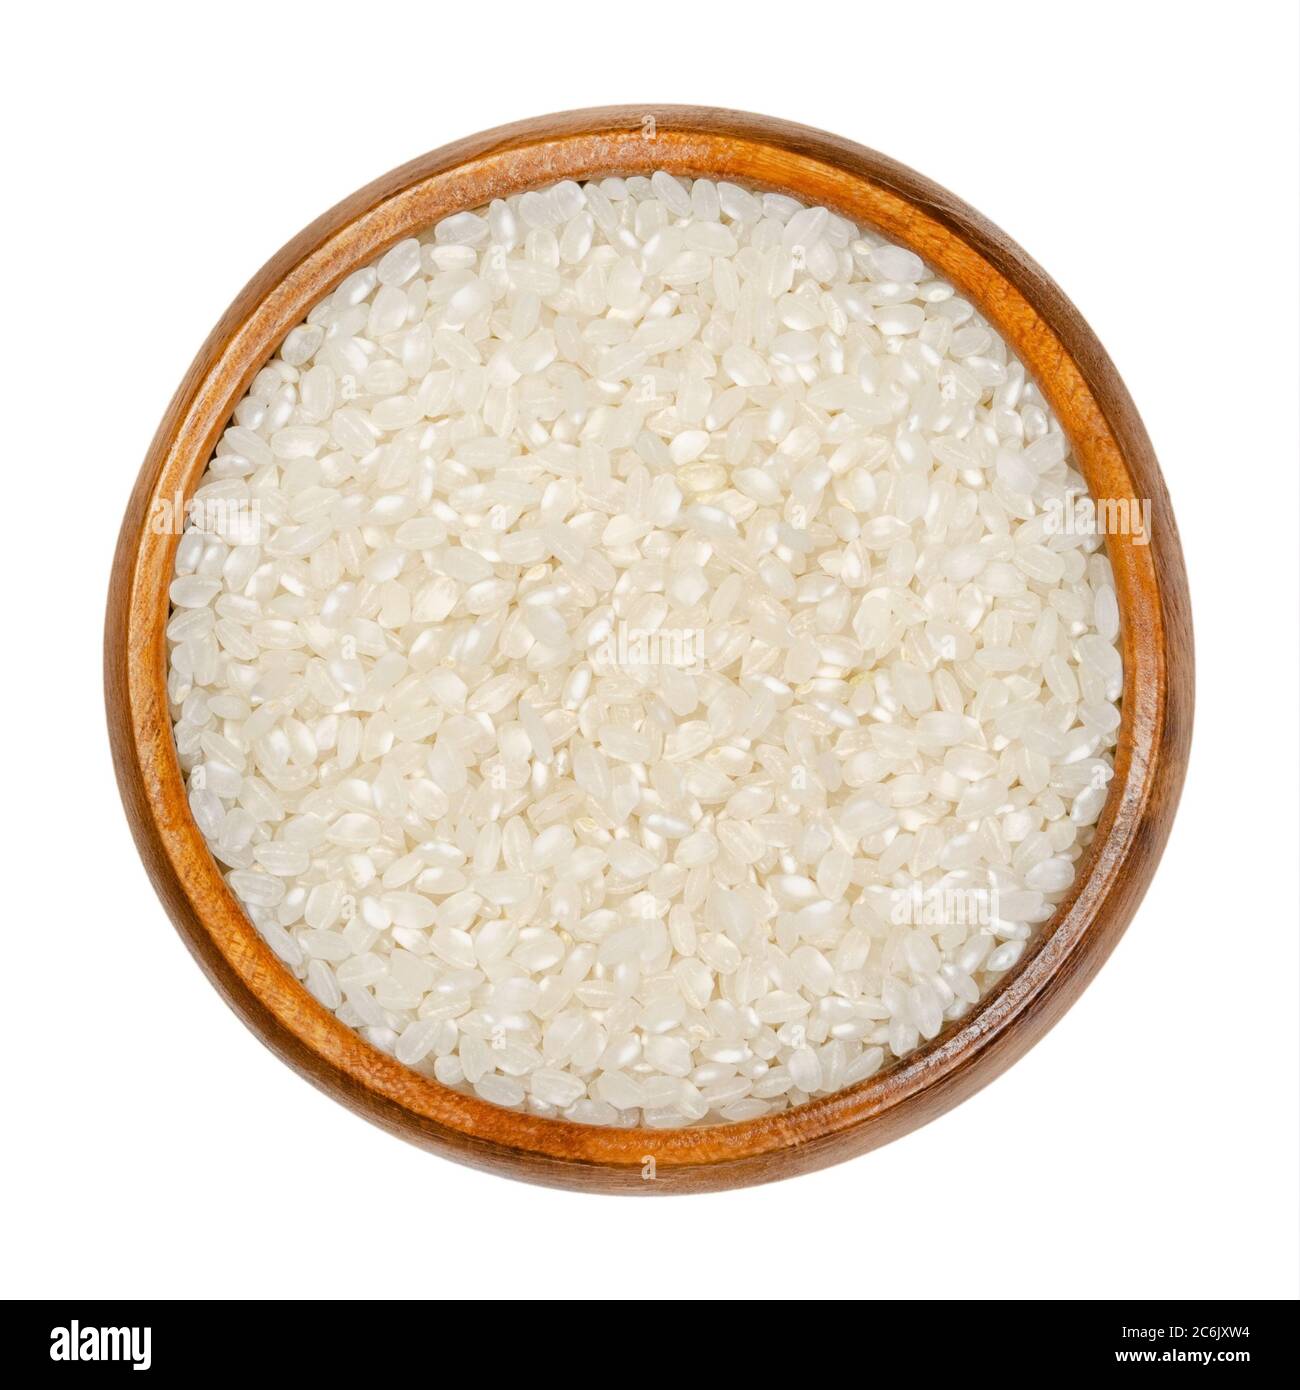 Weißer Kurzkornreis in Holzschüssel. Samen des Grases Oryza sativa, auch als asiatischer Reis bekannt. Getreide und Grundnahrungsmittel. Stockfoto